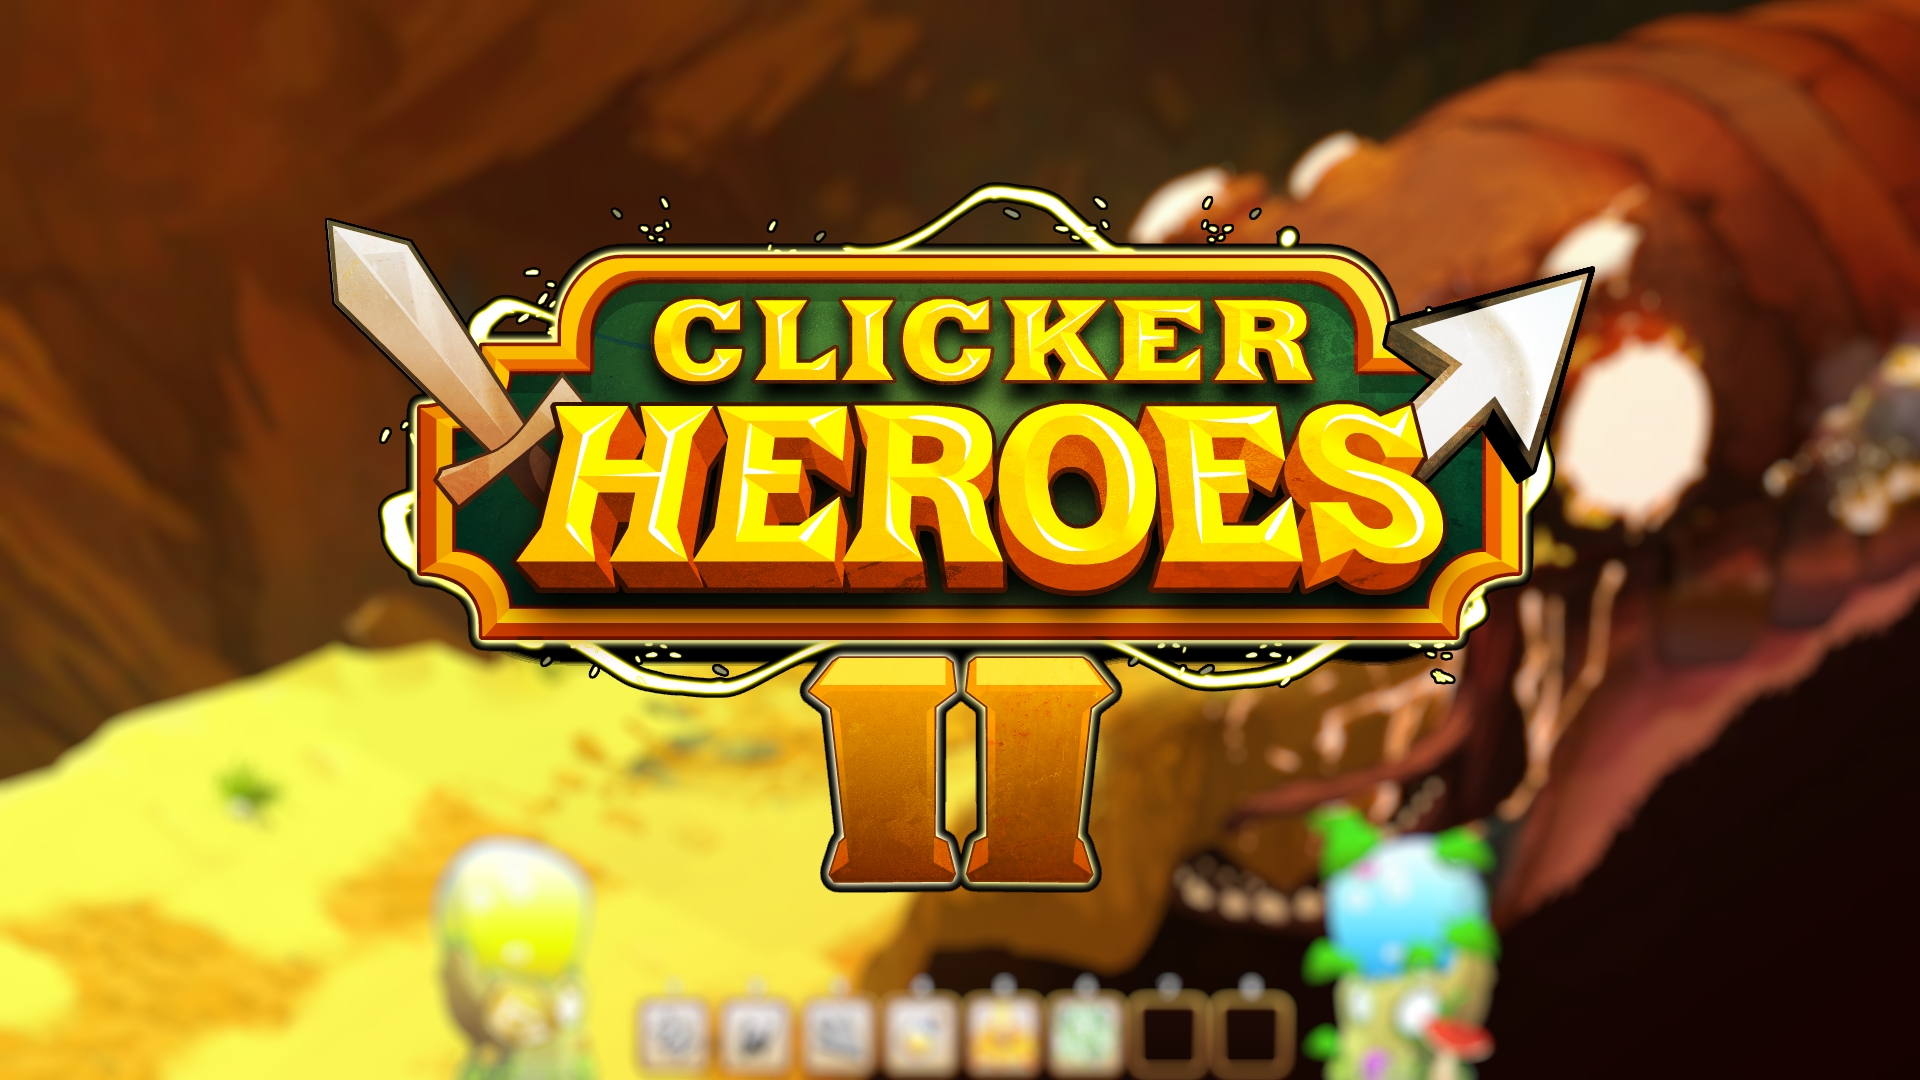 clicker-heroes-2-free-download-gametrex